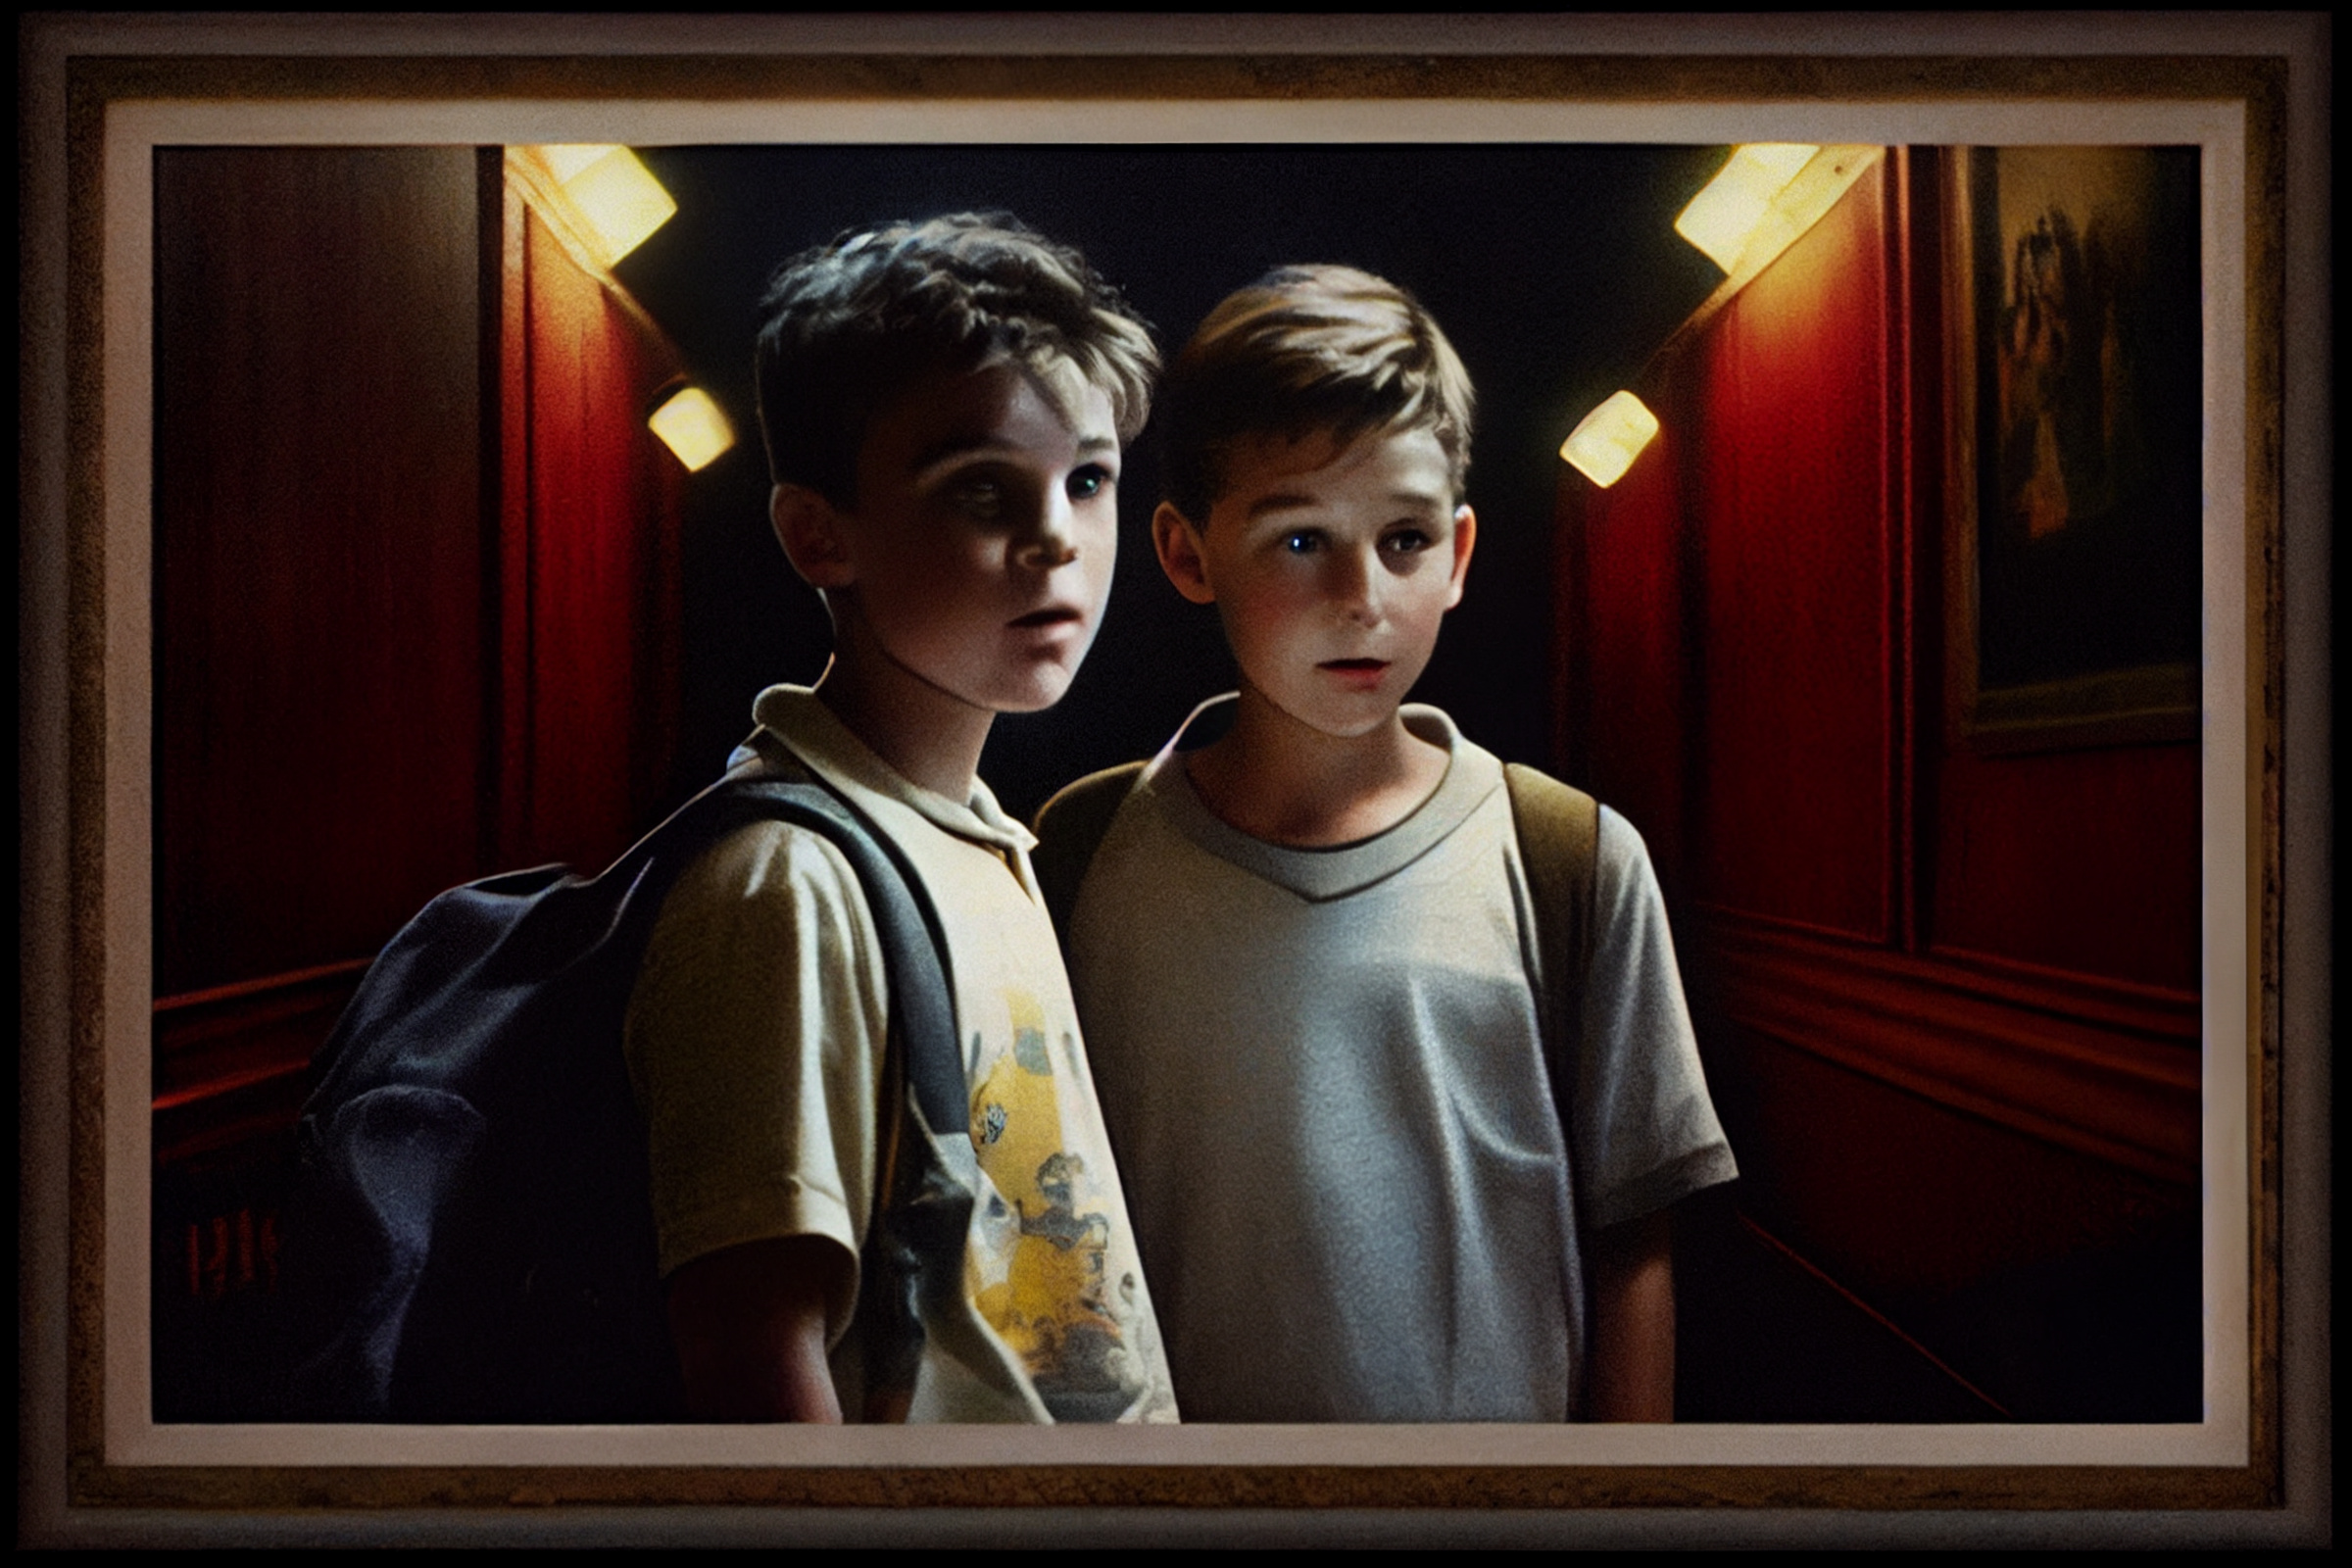 Das Geheimnis einer Filmerfahrung - Peter Baumann über Stand By Me im Kino. Symbolbild mit zwei Jungs im dunklen Kinosaal.